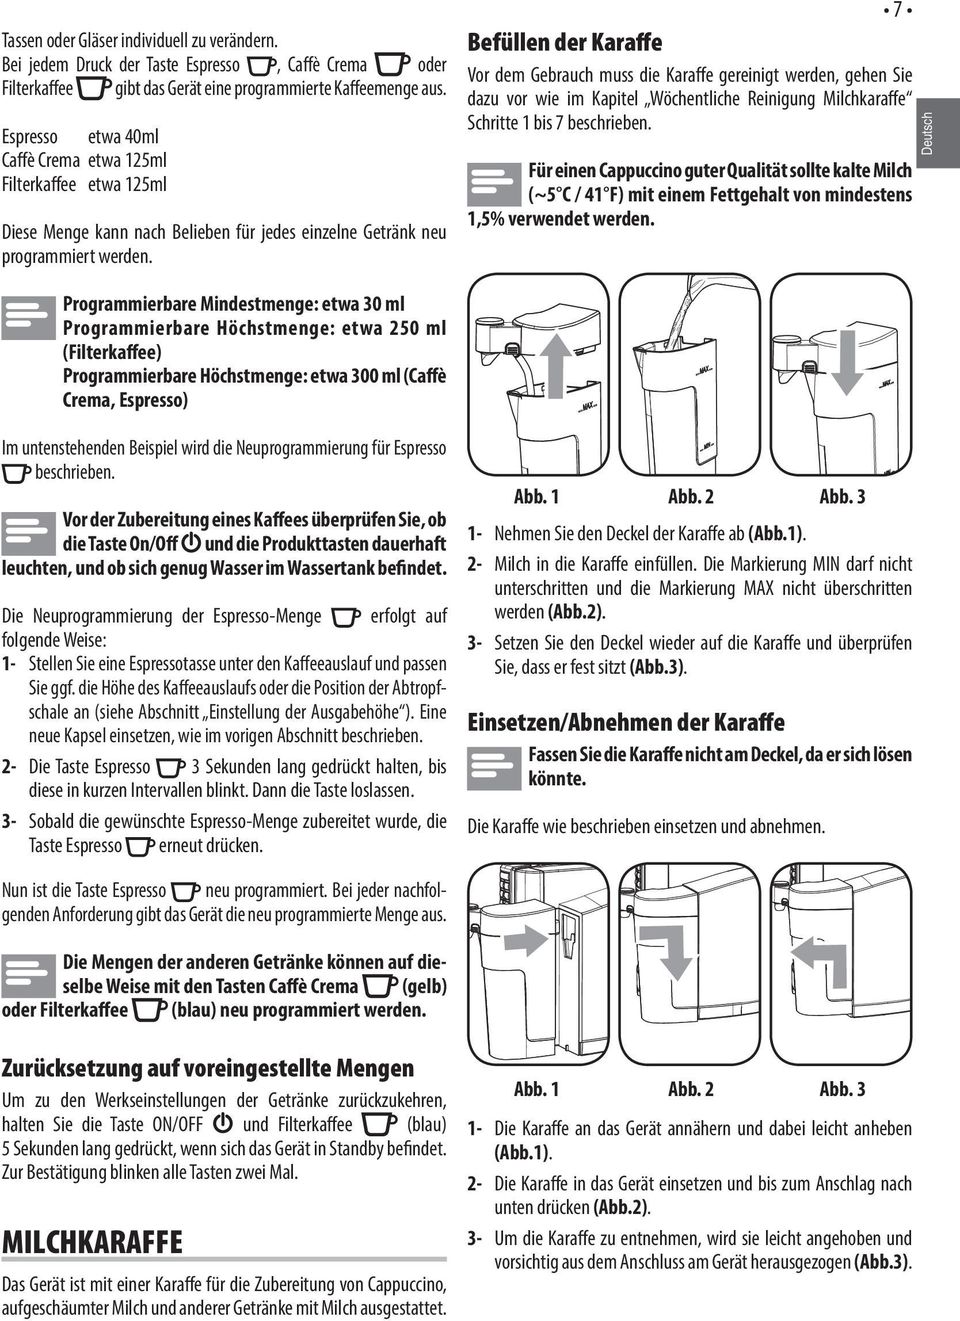 7 Befüllen der Karaffe Vor dem Gebrauch muss die Karaffe gereinigt werden, gehen Sie dazu vor wie im Kapitel Wöchentliche Reinigung Milchkaraffe Schritte 1 bis 7 beschrieben.